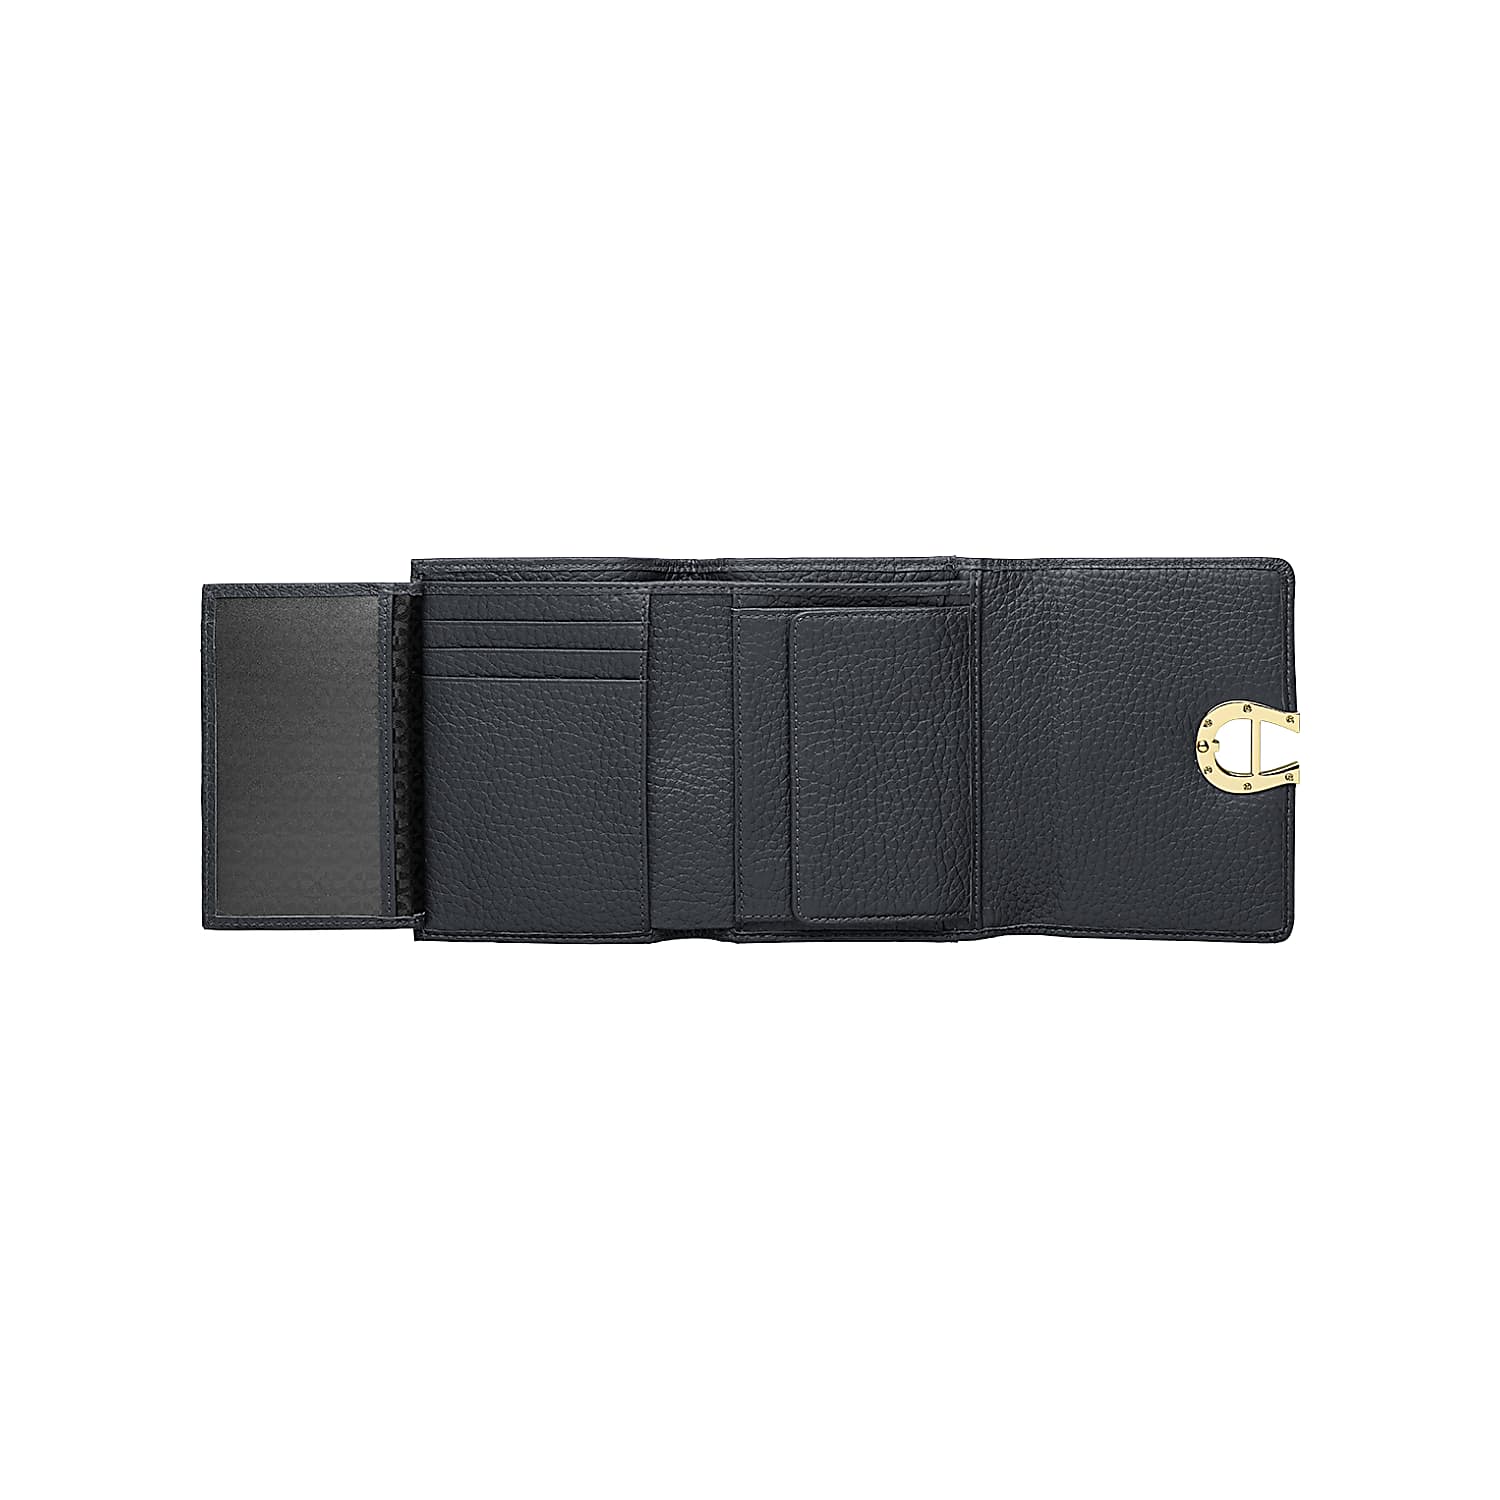 Milano combination wallet